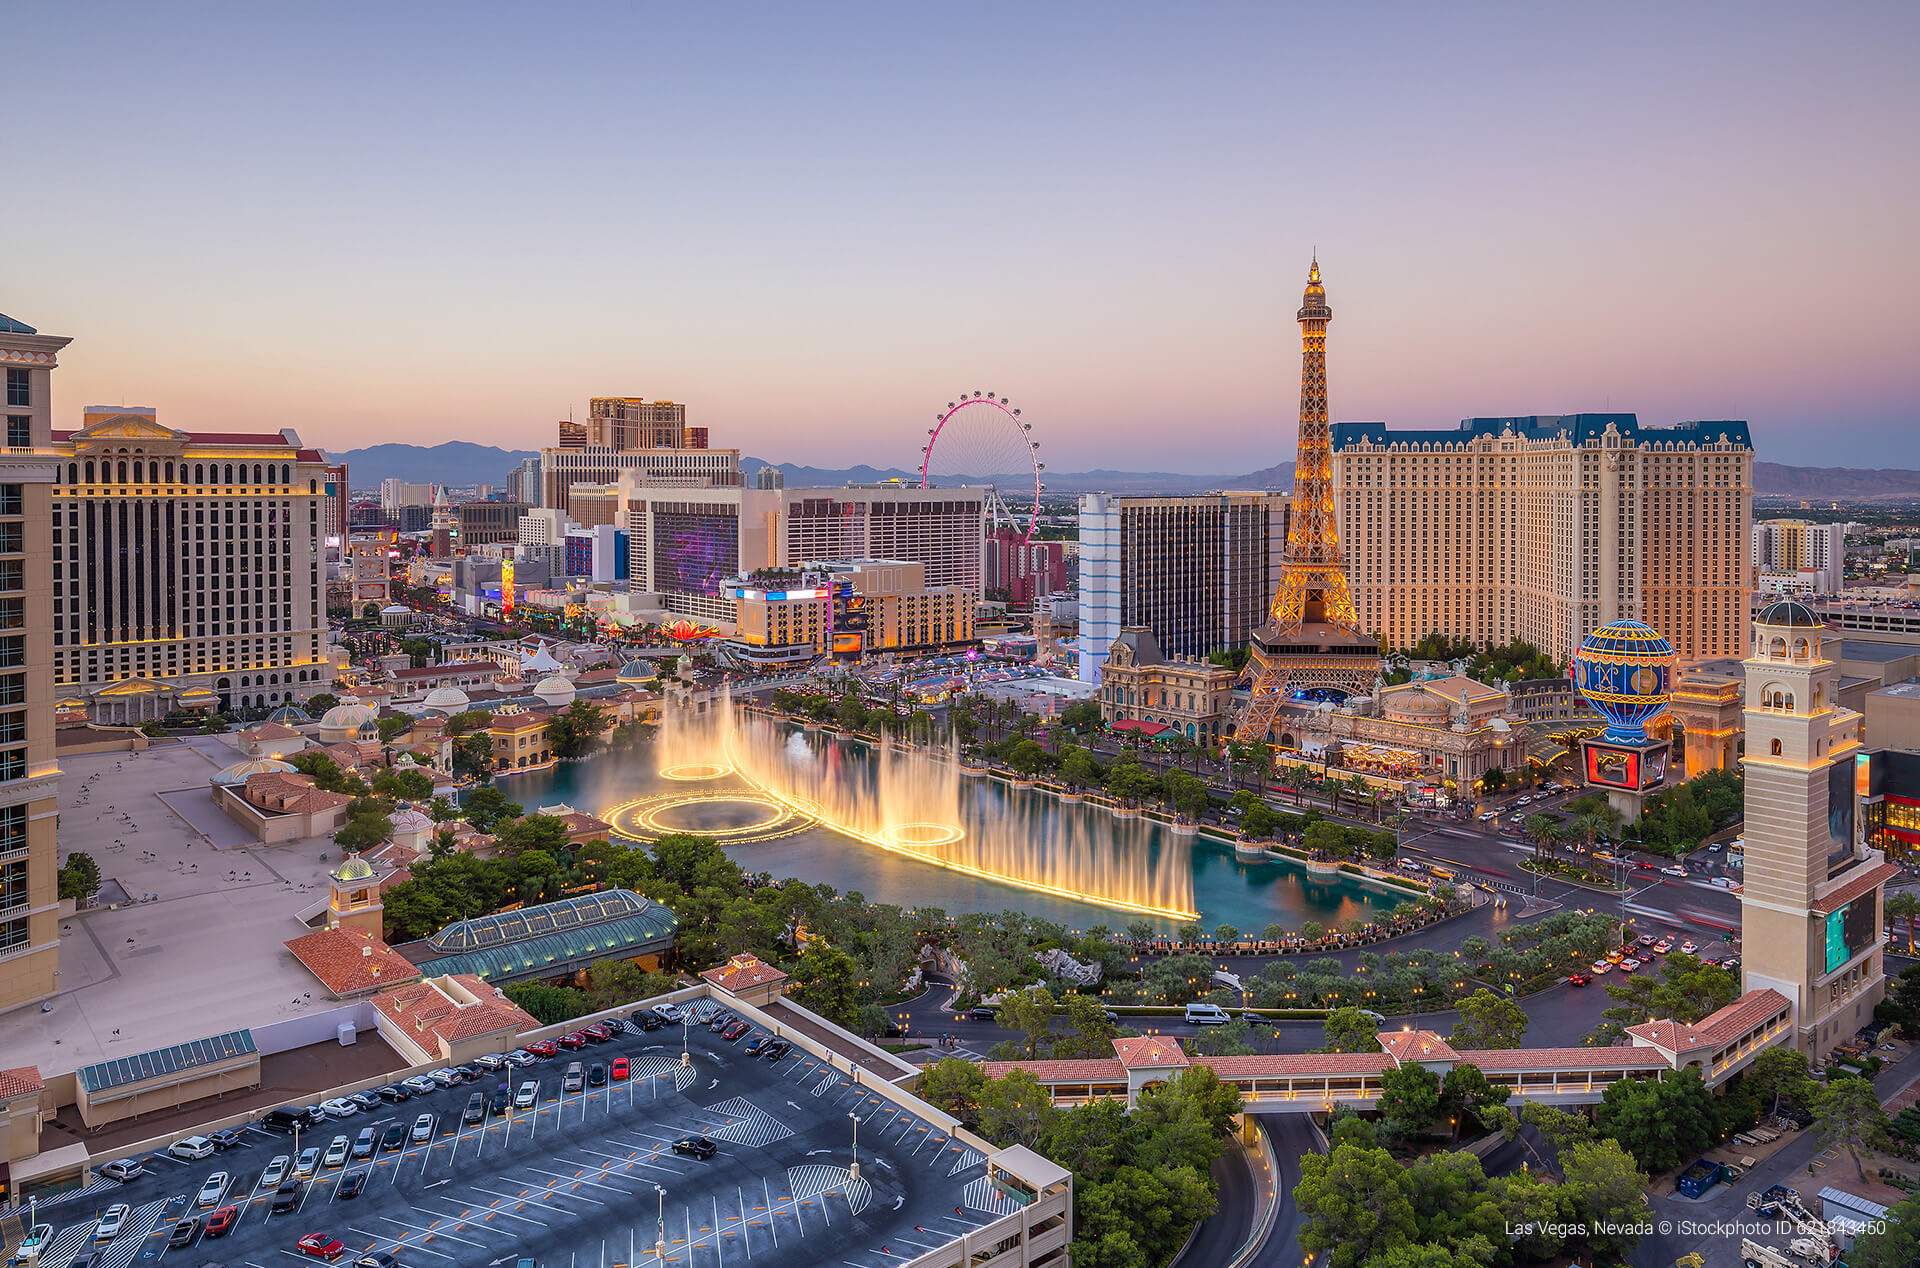 Las Vegas, Nevada 🇺🇸 © iStockphoto ID 621843450